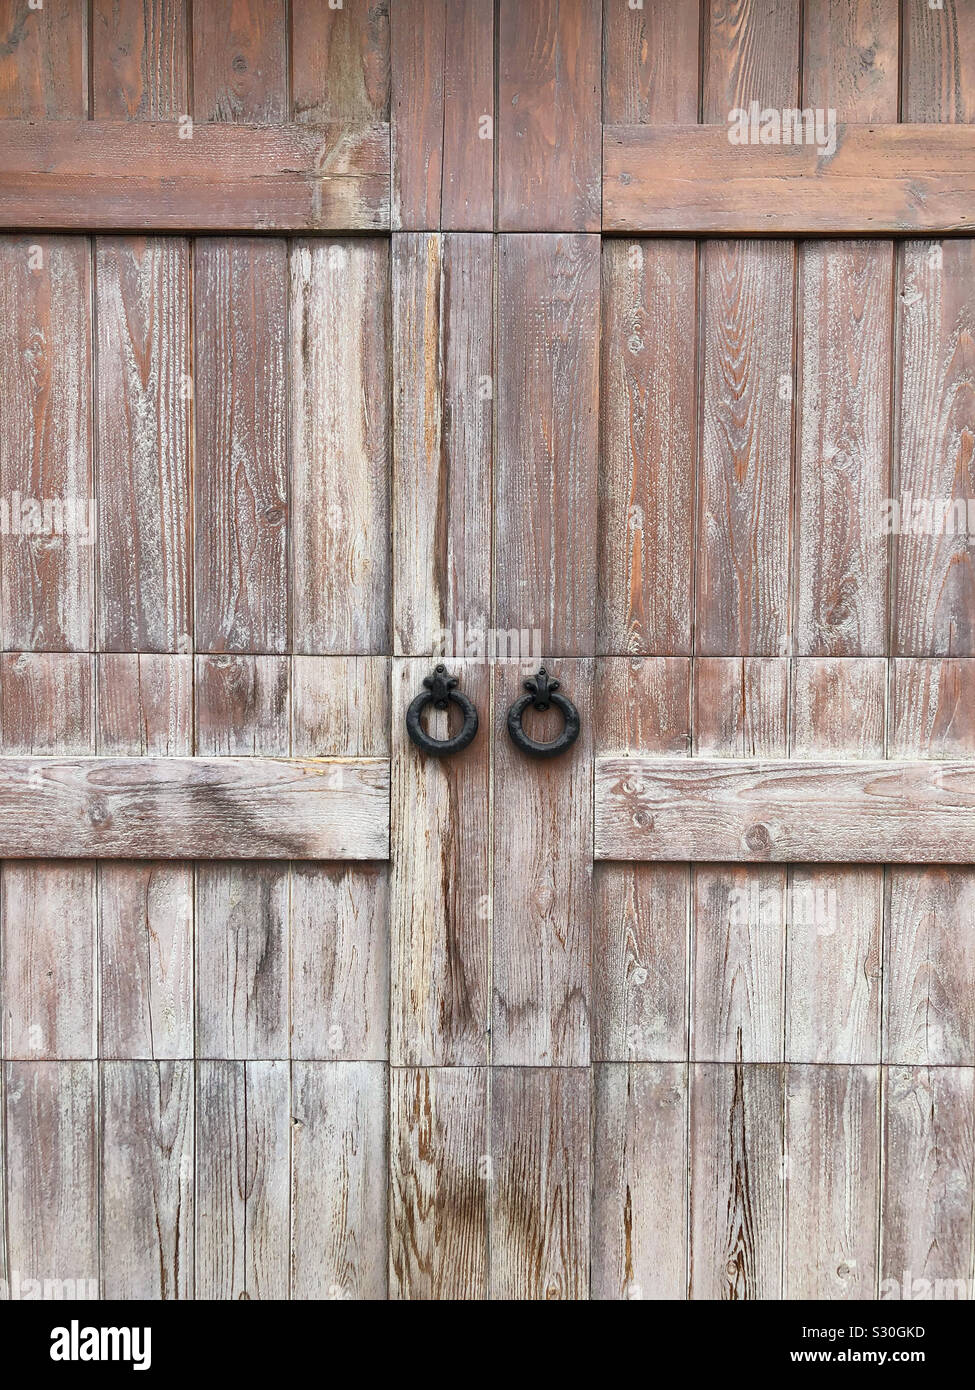 Iron door handles on barn door Stock Photo